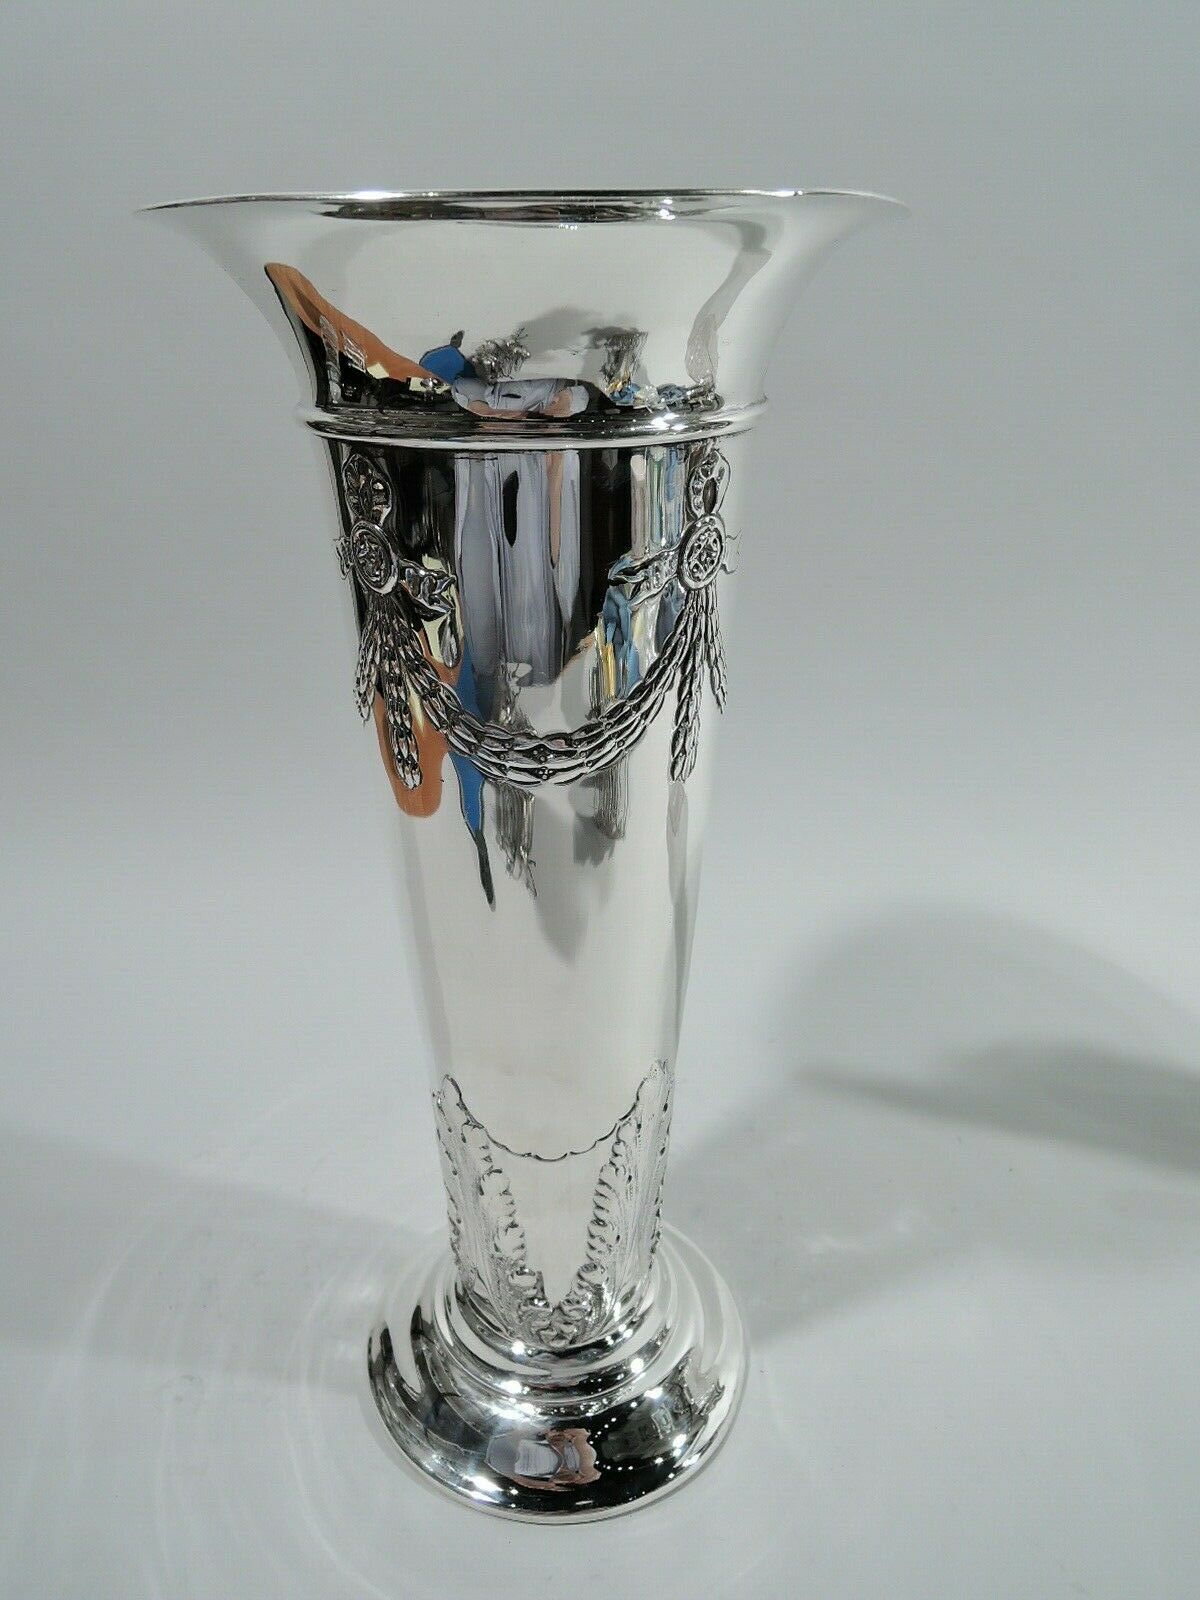 Black Starr & Frost Vase - 143 - Antique Edwardian - American Sterling Silver